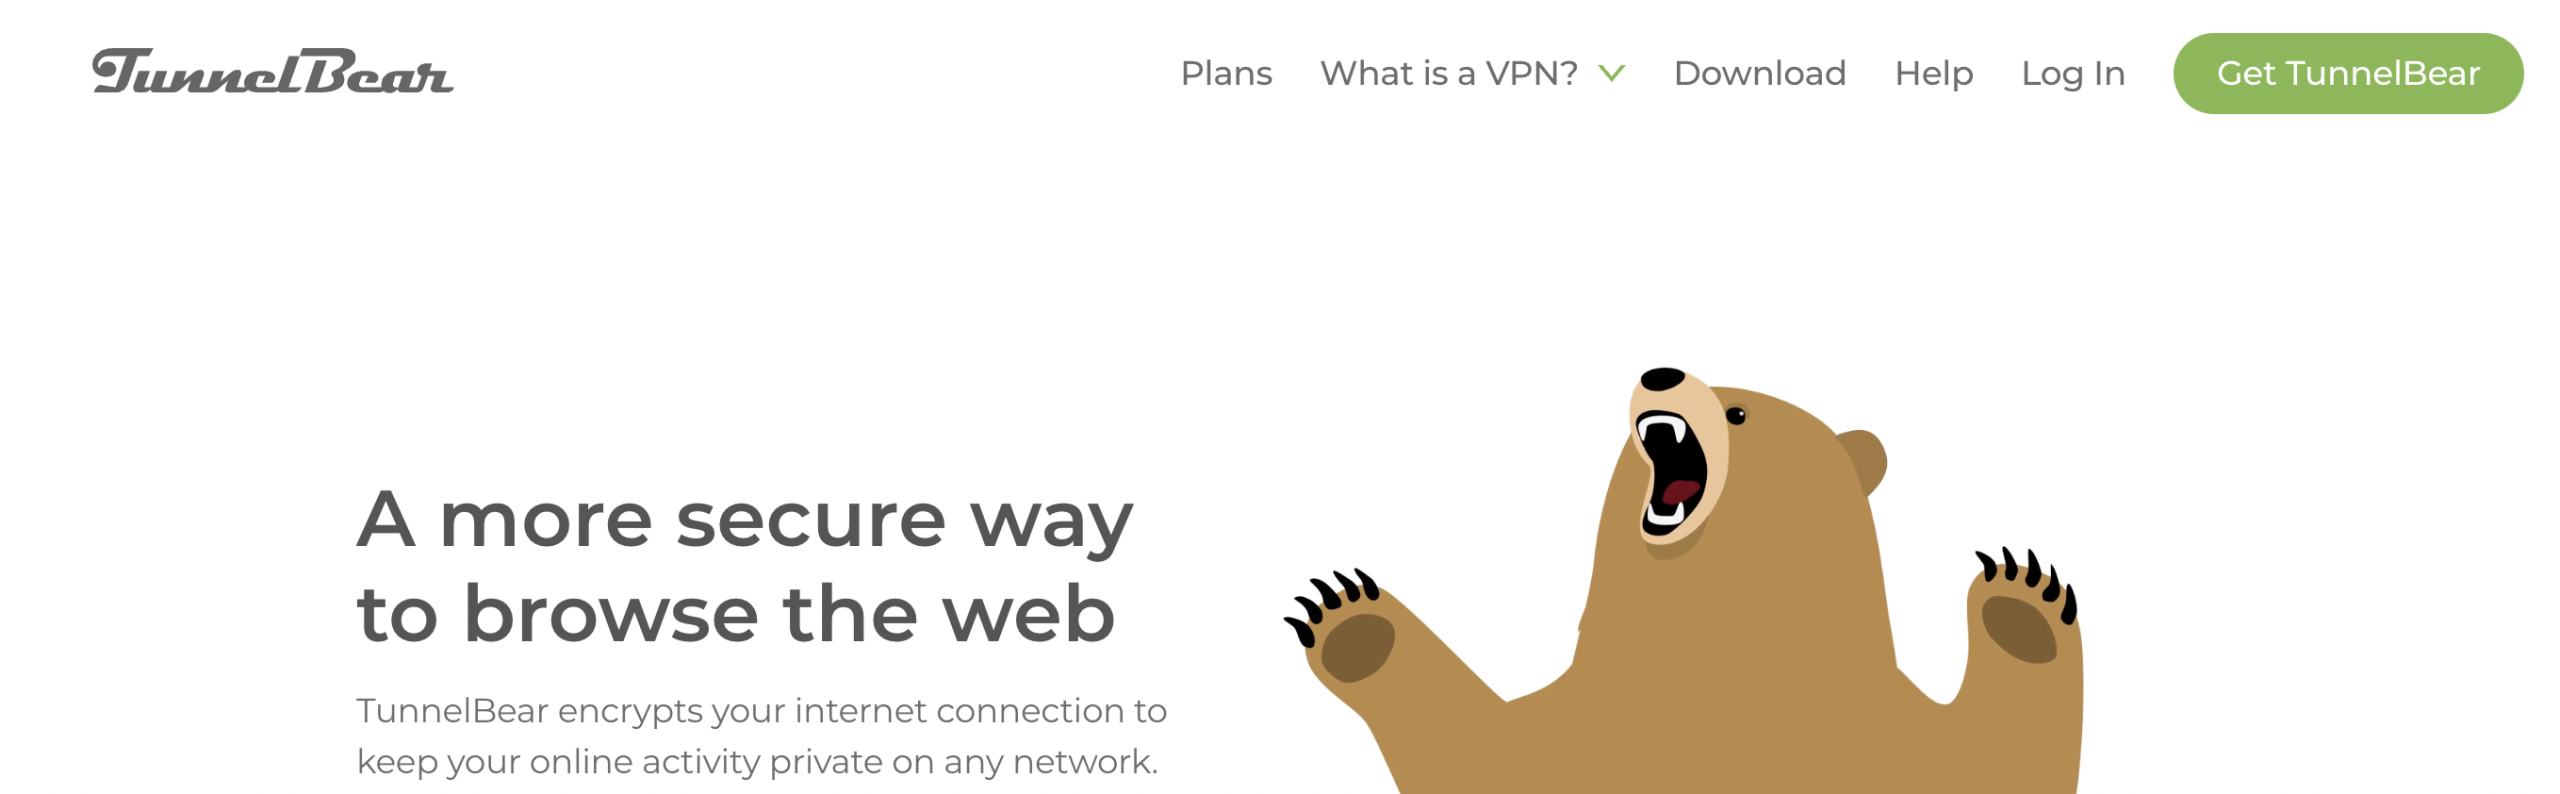 TunnelBear – populiarus nemokamas VPN, kurį lengva naudoti